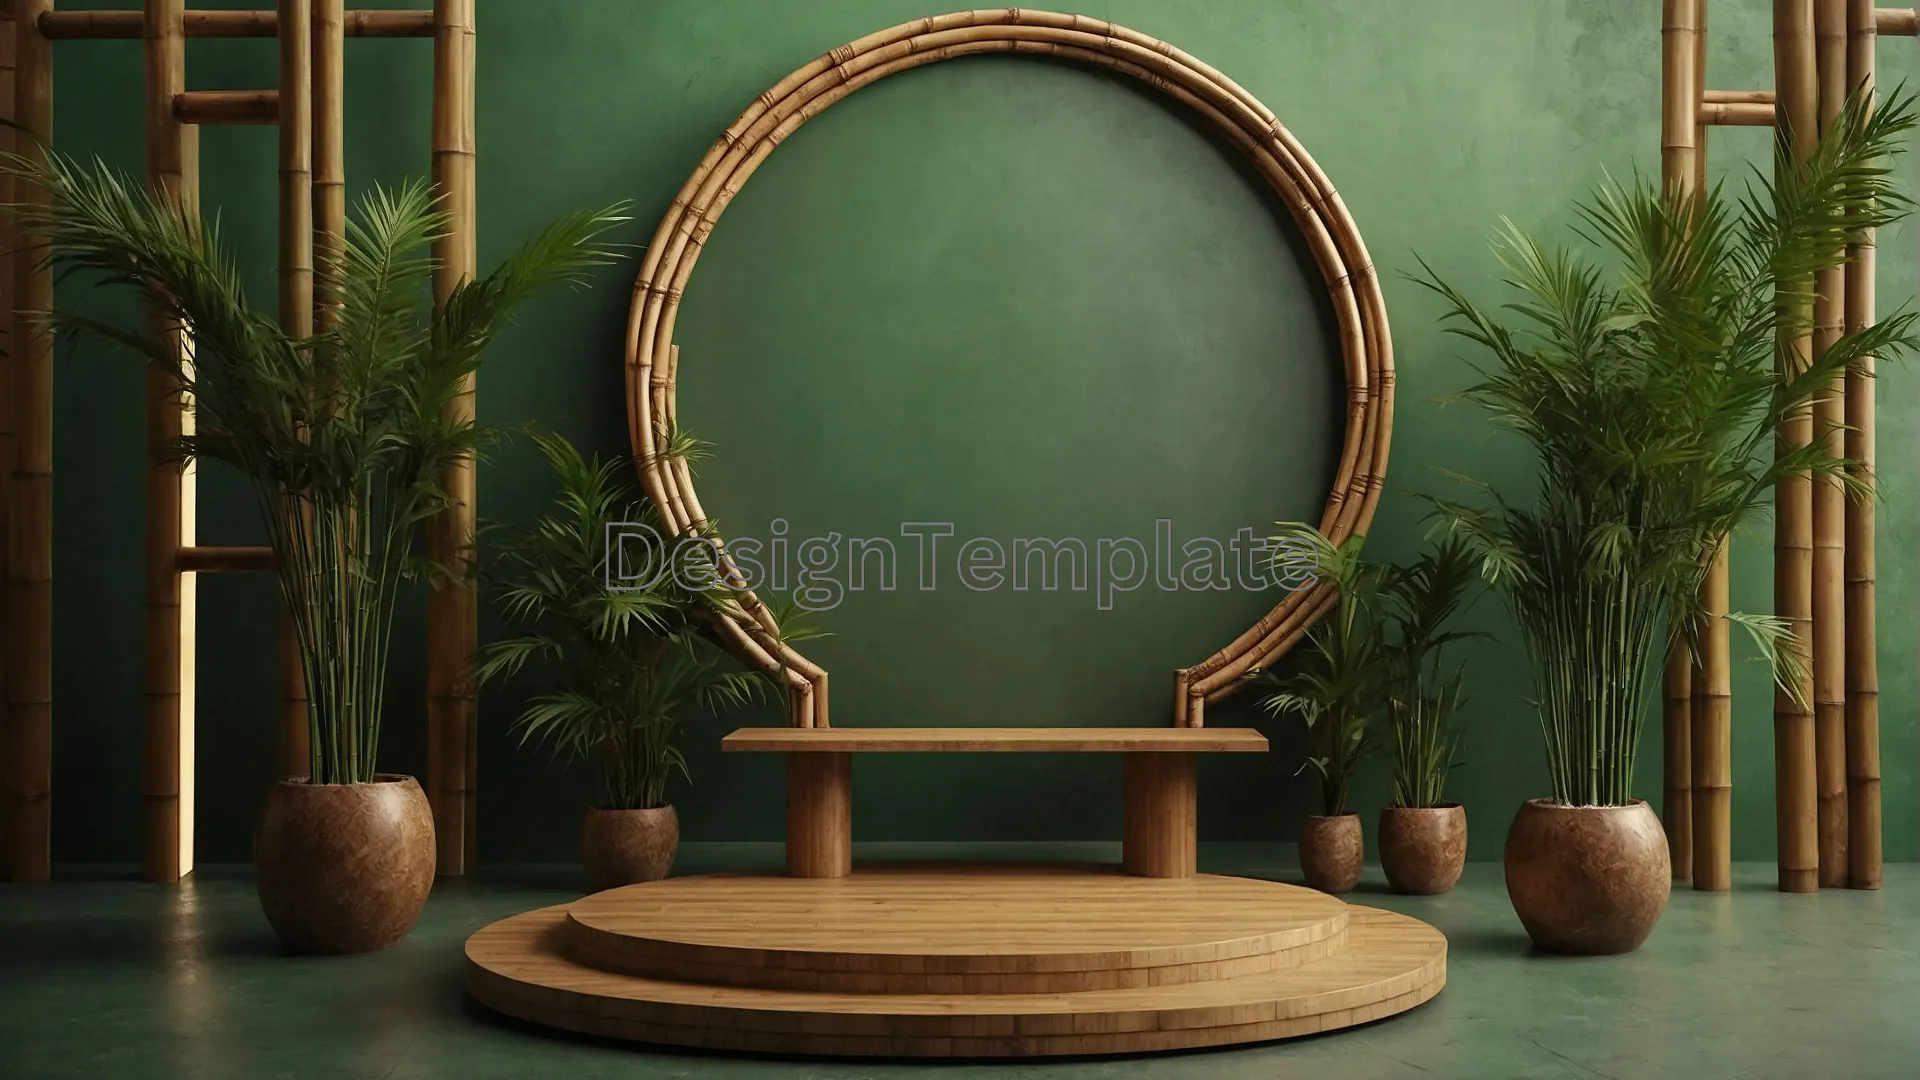 Zen Plant and Mirror Arrangement Serene Background Photo